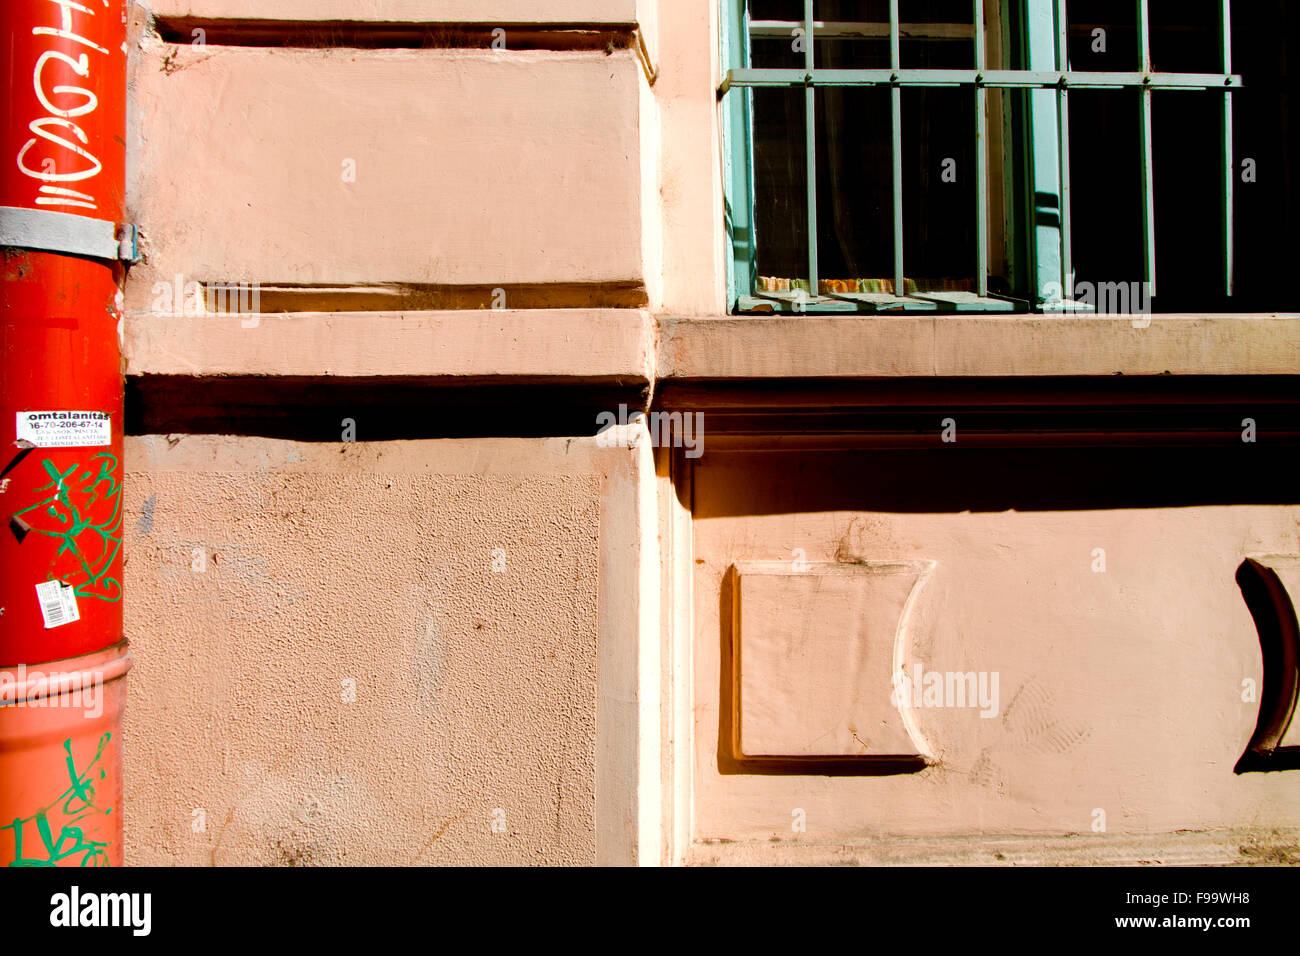 Sur un tuyau rouge vandalisées bâtiment orange vert avec une fenêtre grillée Banque D'Images